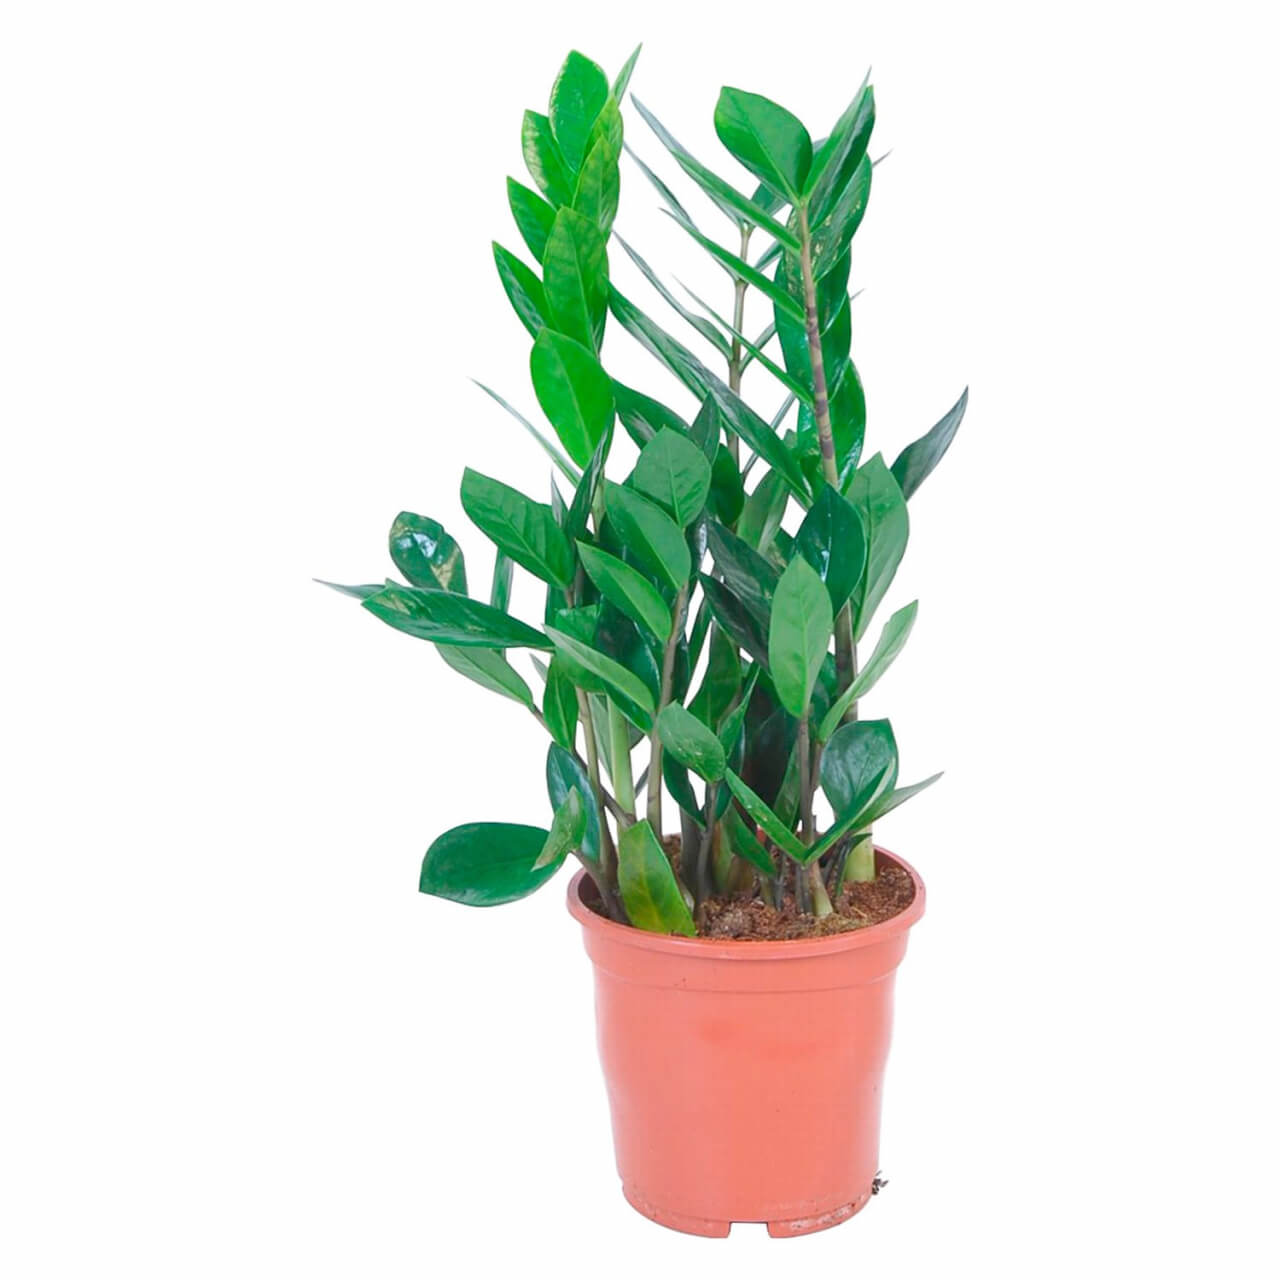  Agglegényvirág  (Zamioculcas zamiifolia)